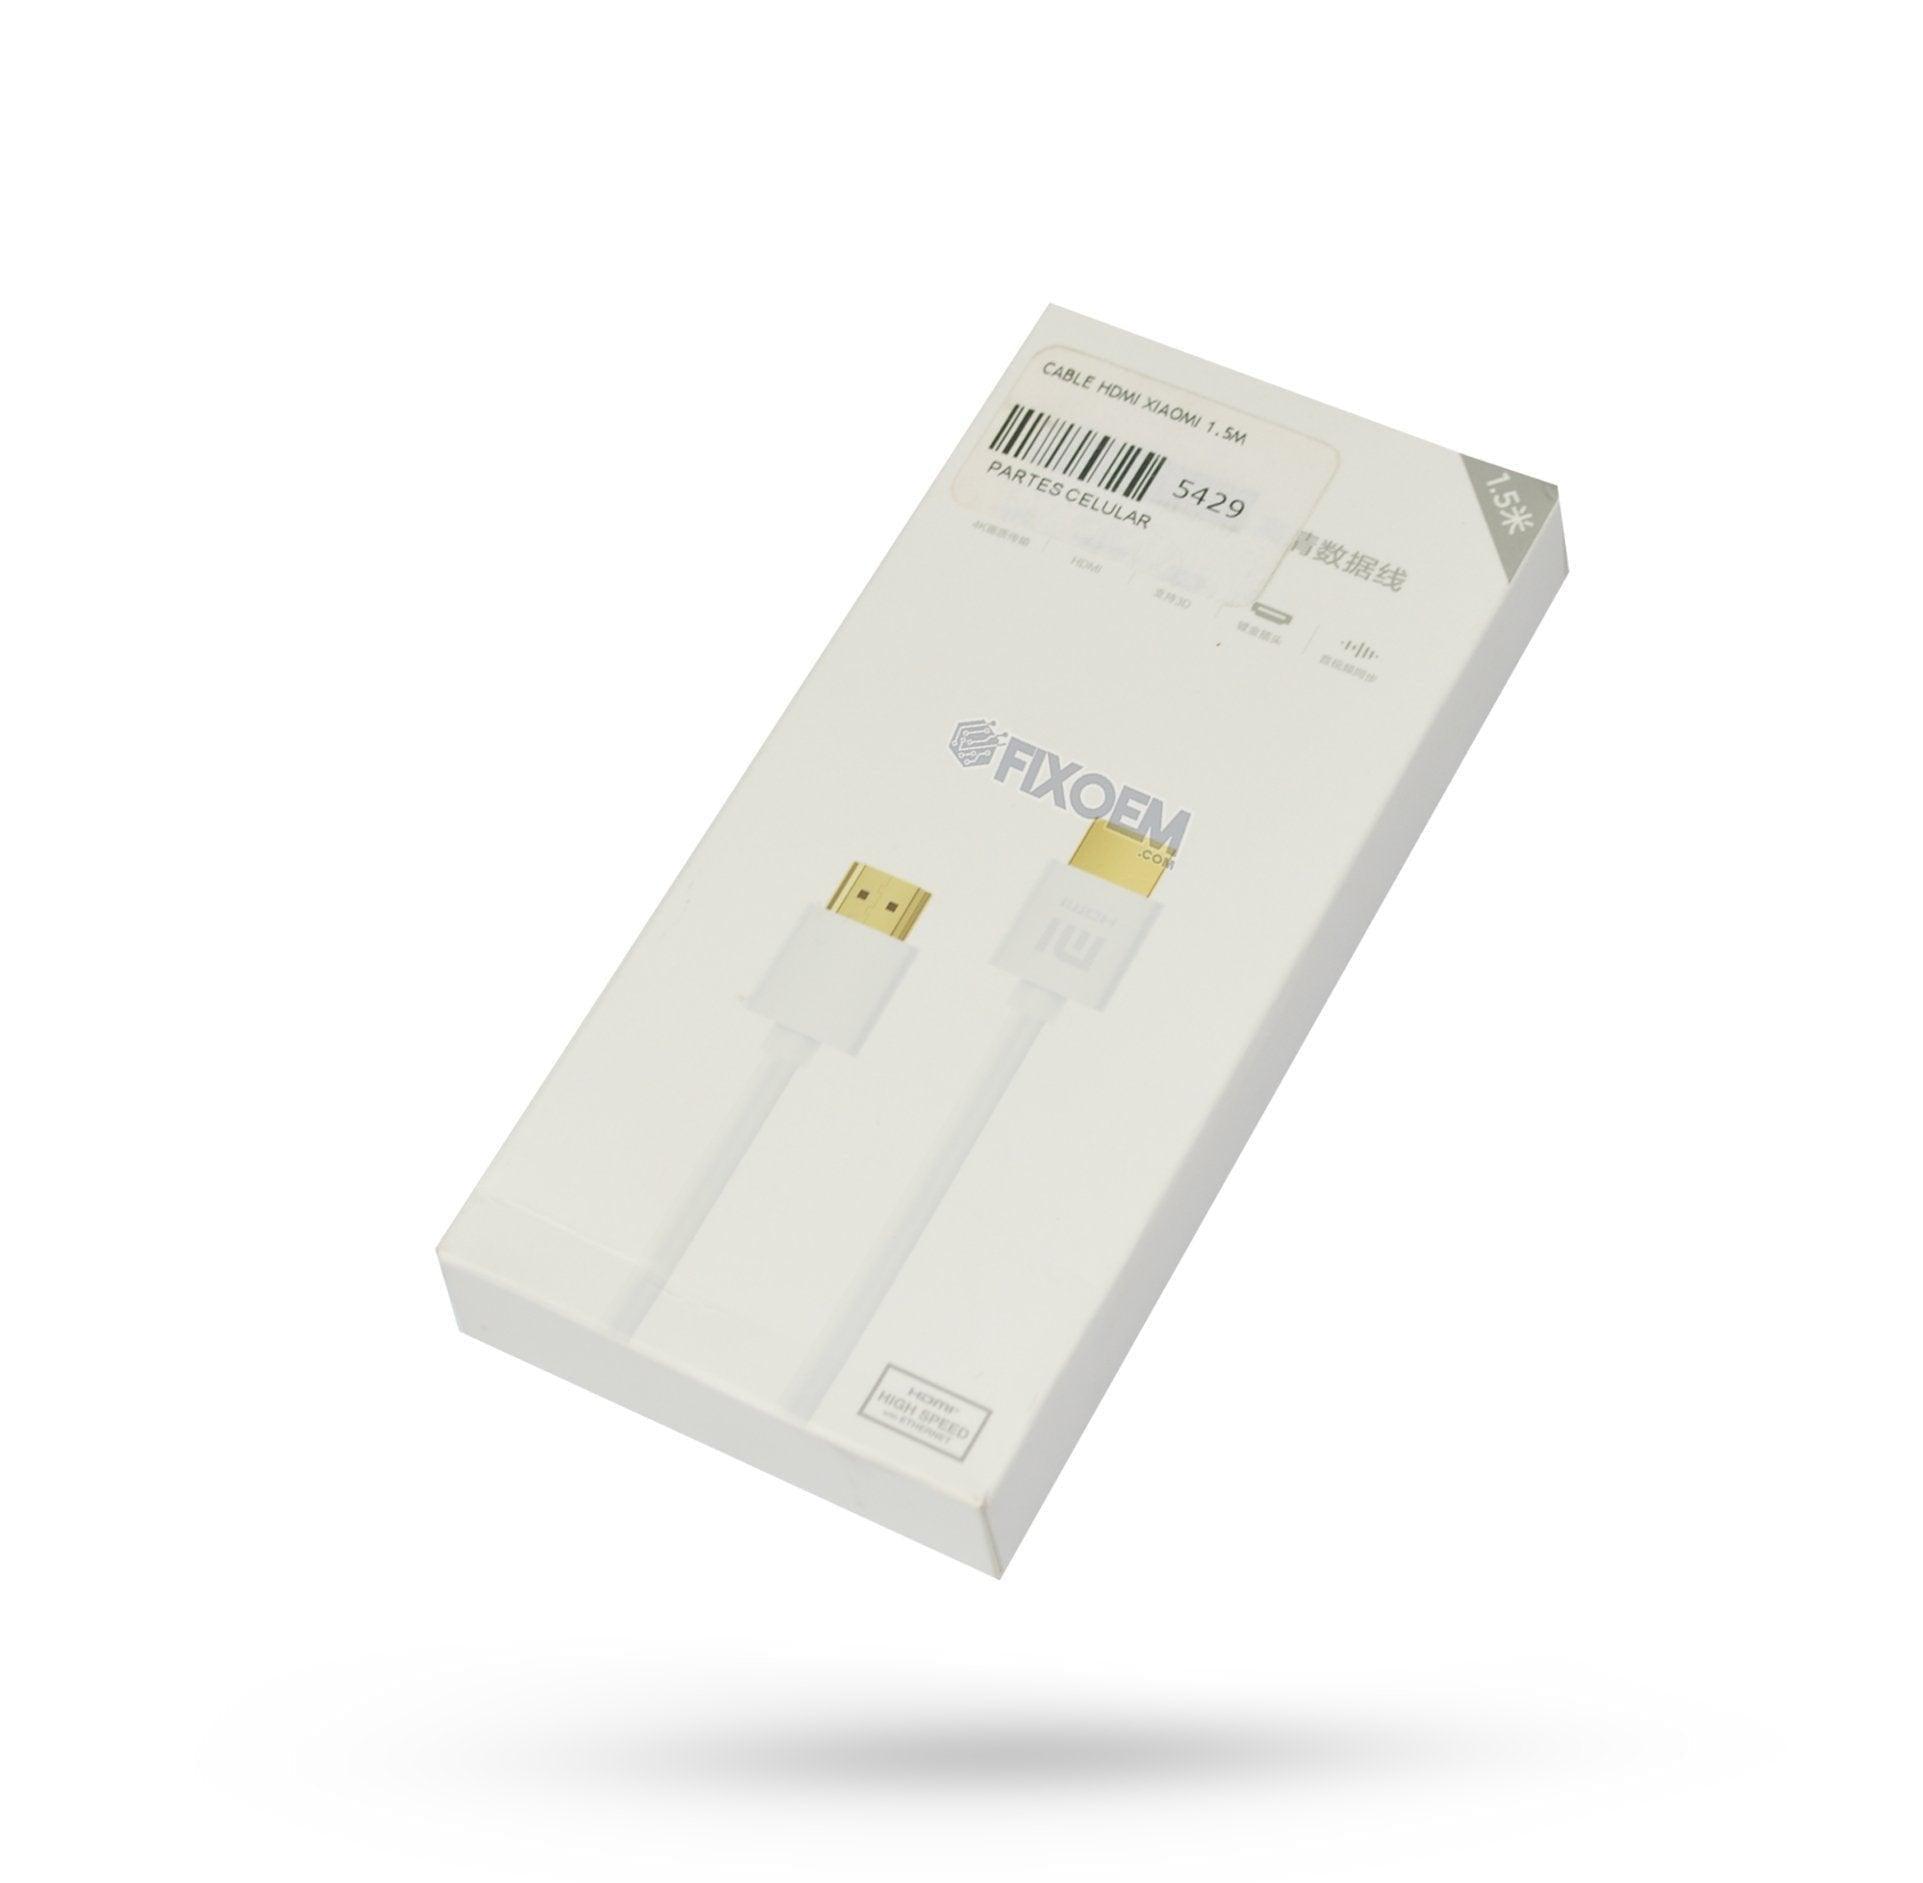 Cable Hdmi Xiaomi a solo $ 240.00 Refaccion y puestos celulares, refurbish y microelectronica.- FixOEM